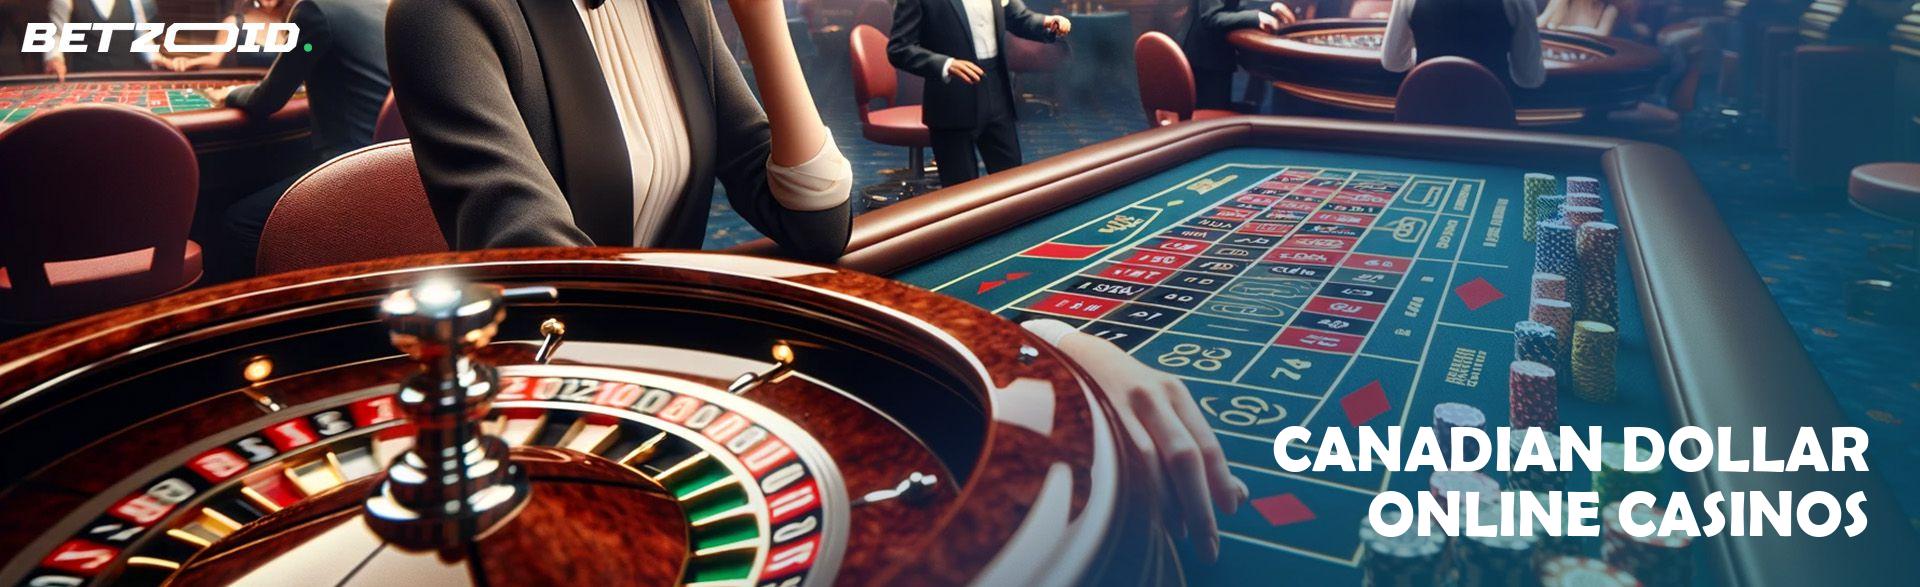 Canadian Dollar Online Casinos.